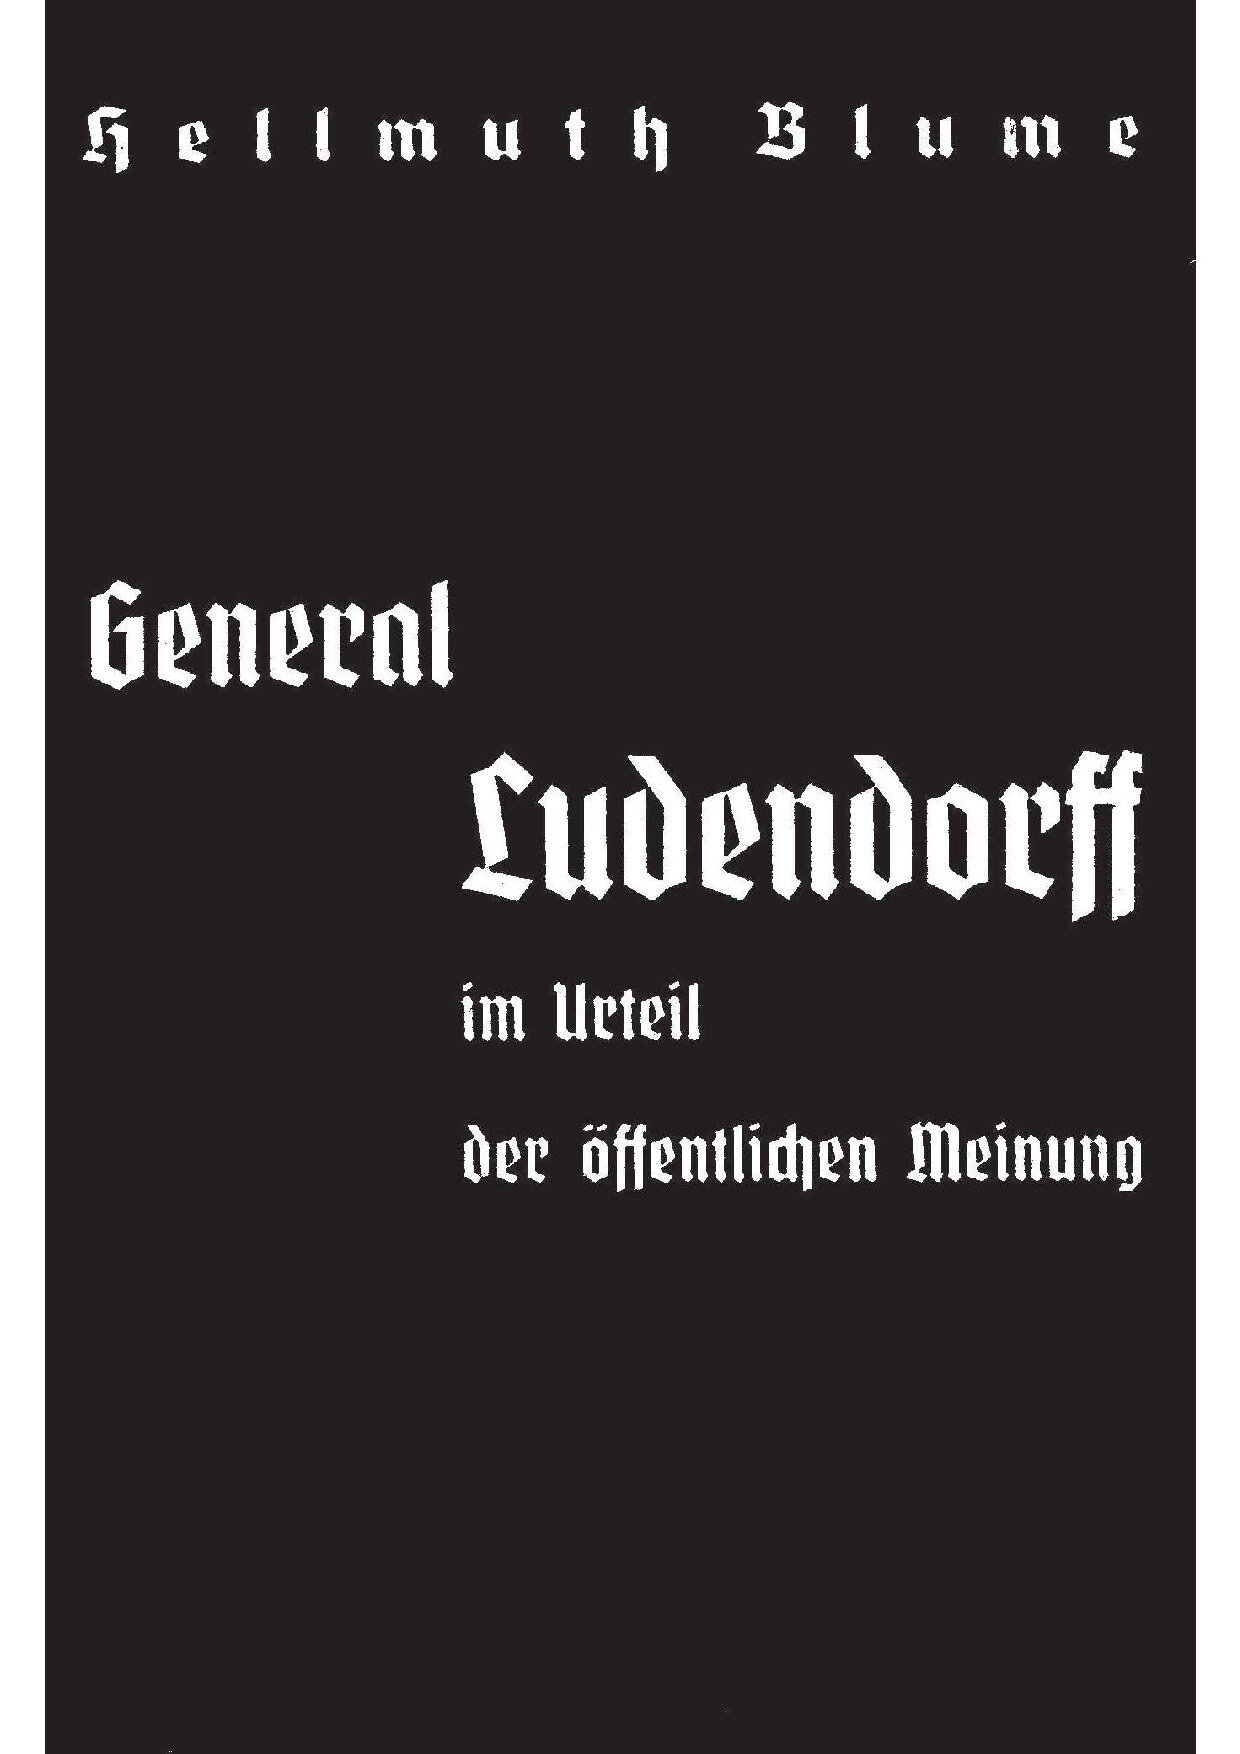 General Ludendorff im Urteil der öffentlichen Meinung